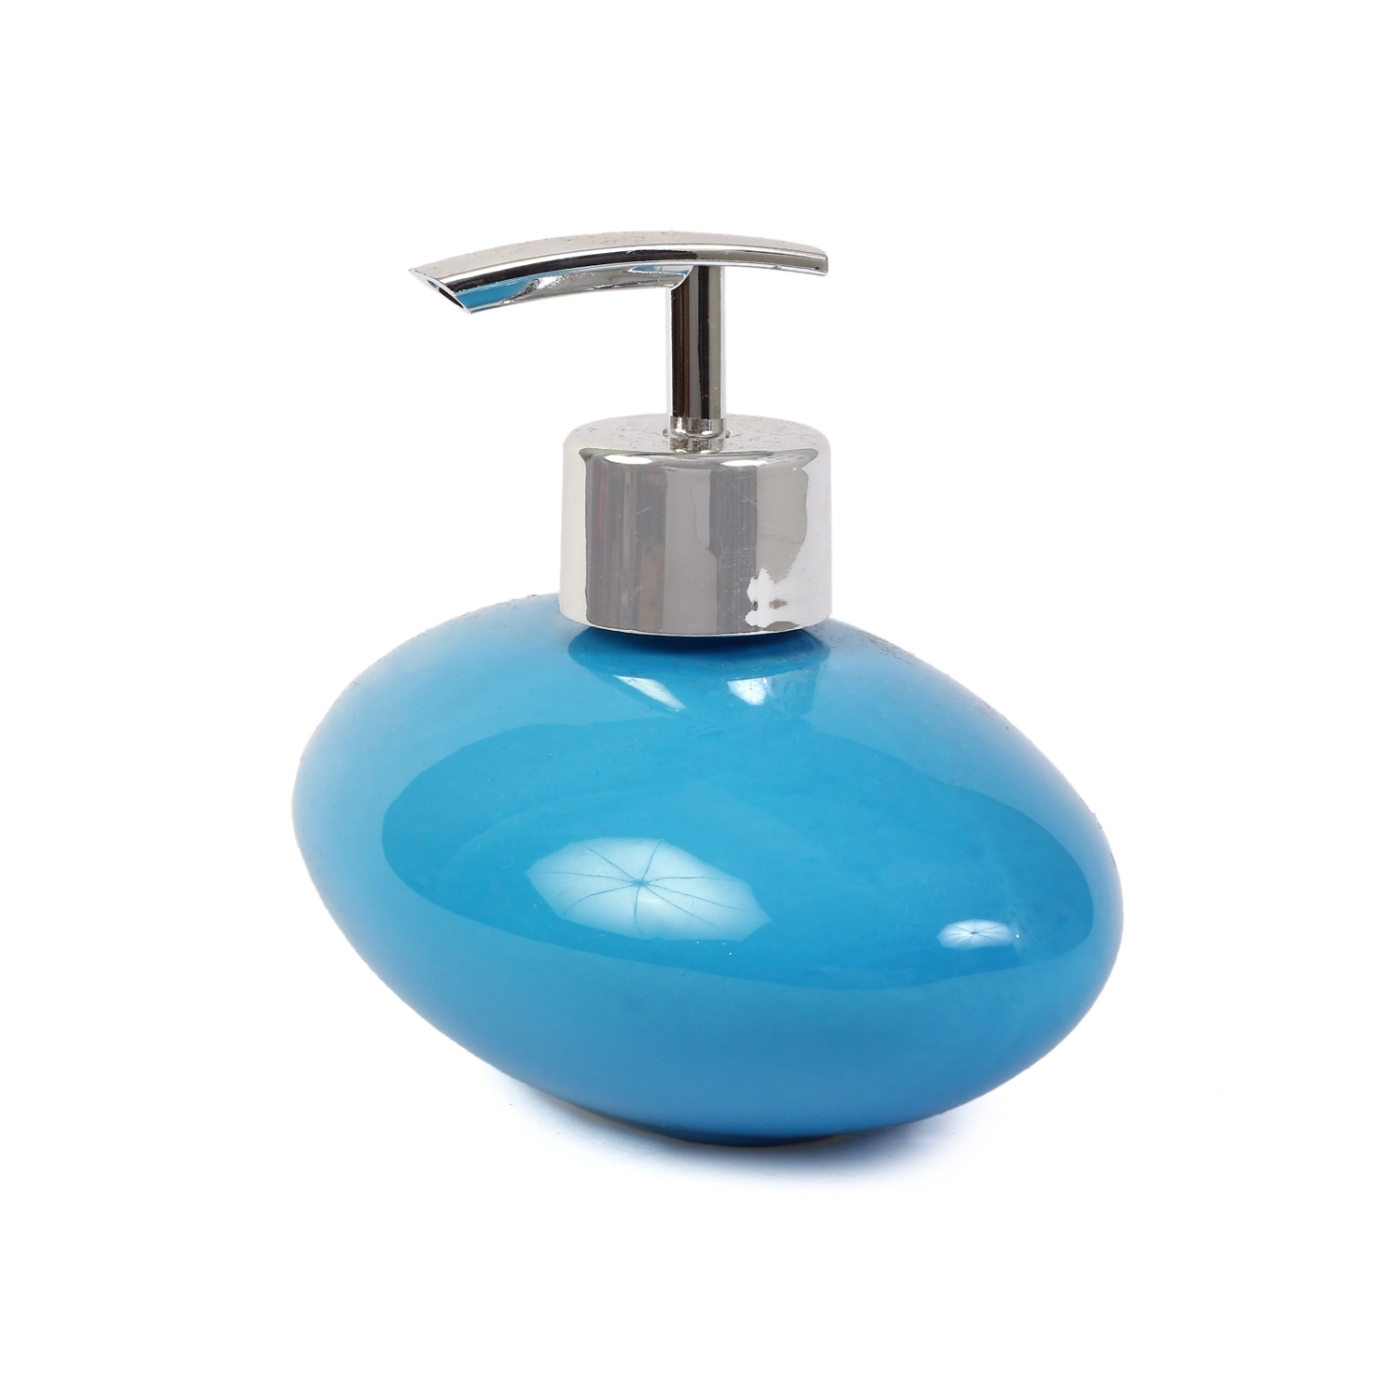 ORKA HOME Oval Soap Dispenser - Blue  